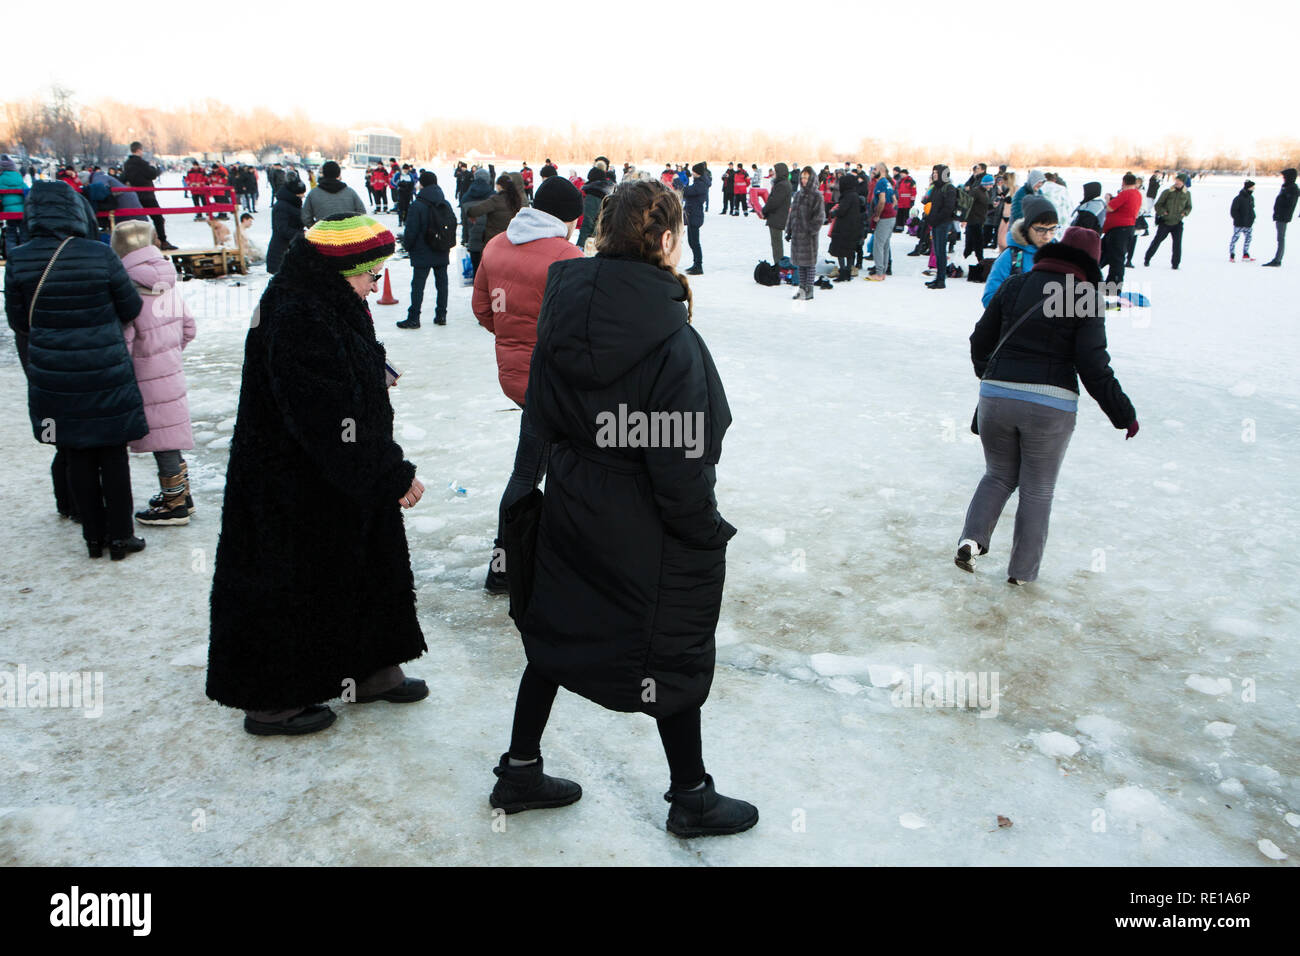 Donne ucraine di diversa età vestiti caldi in inverno i panni a piedi su ghiaccio e neve per prendere parte in inverno Cristo il battesimo dell'Acqua Nuoto tradizione. Foto Stock